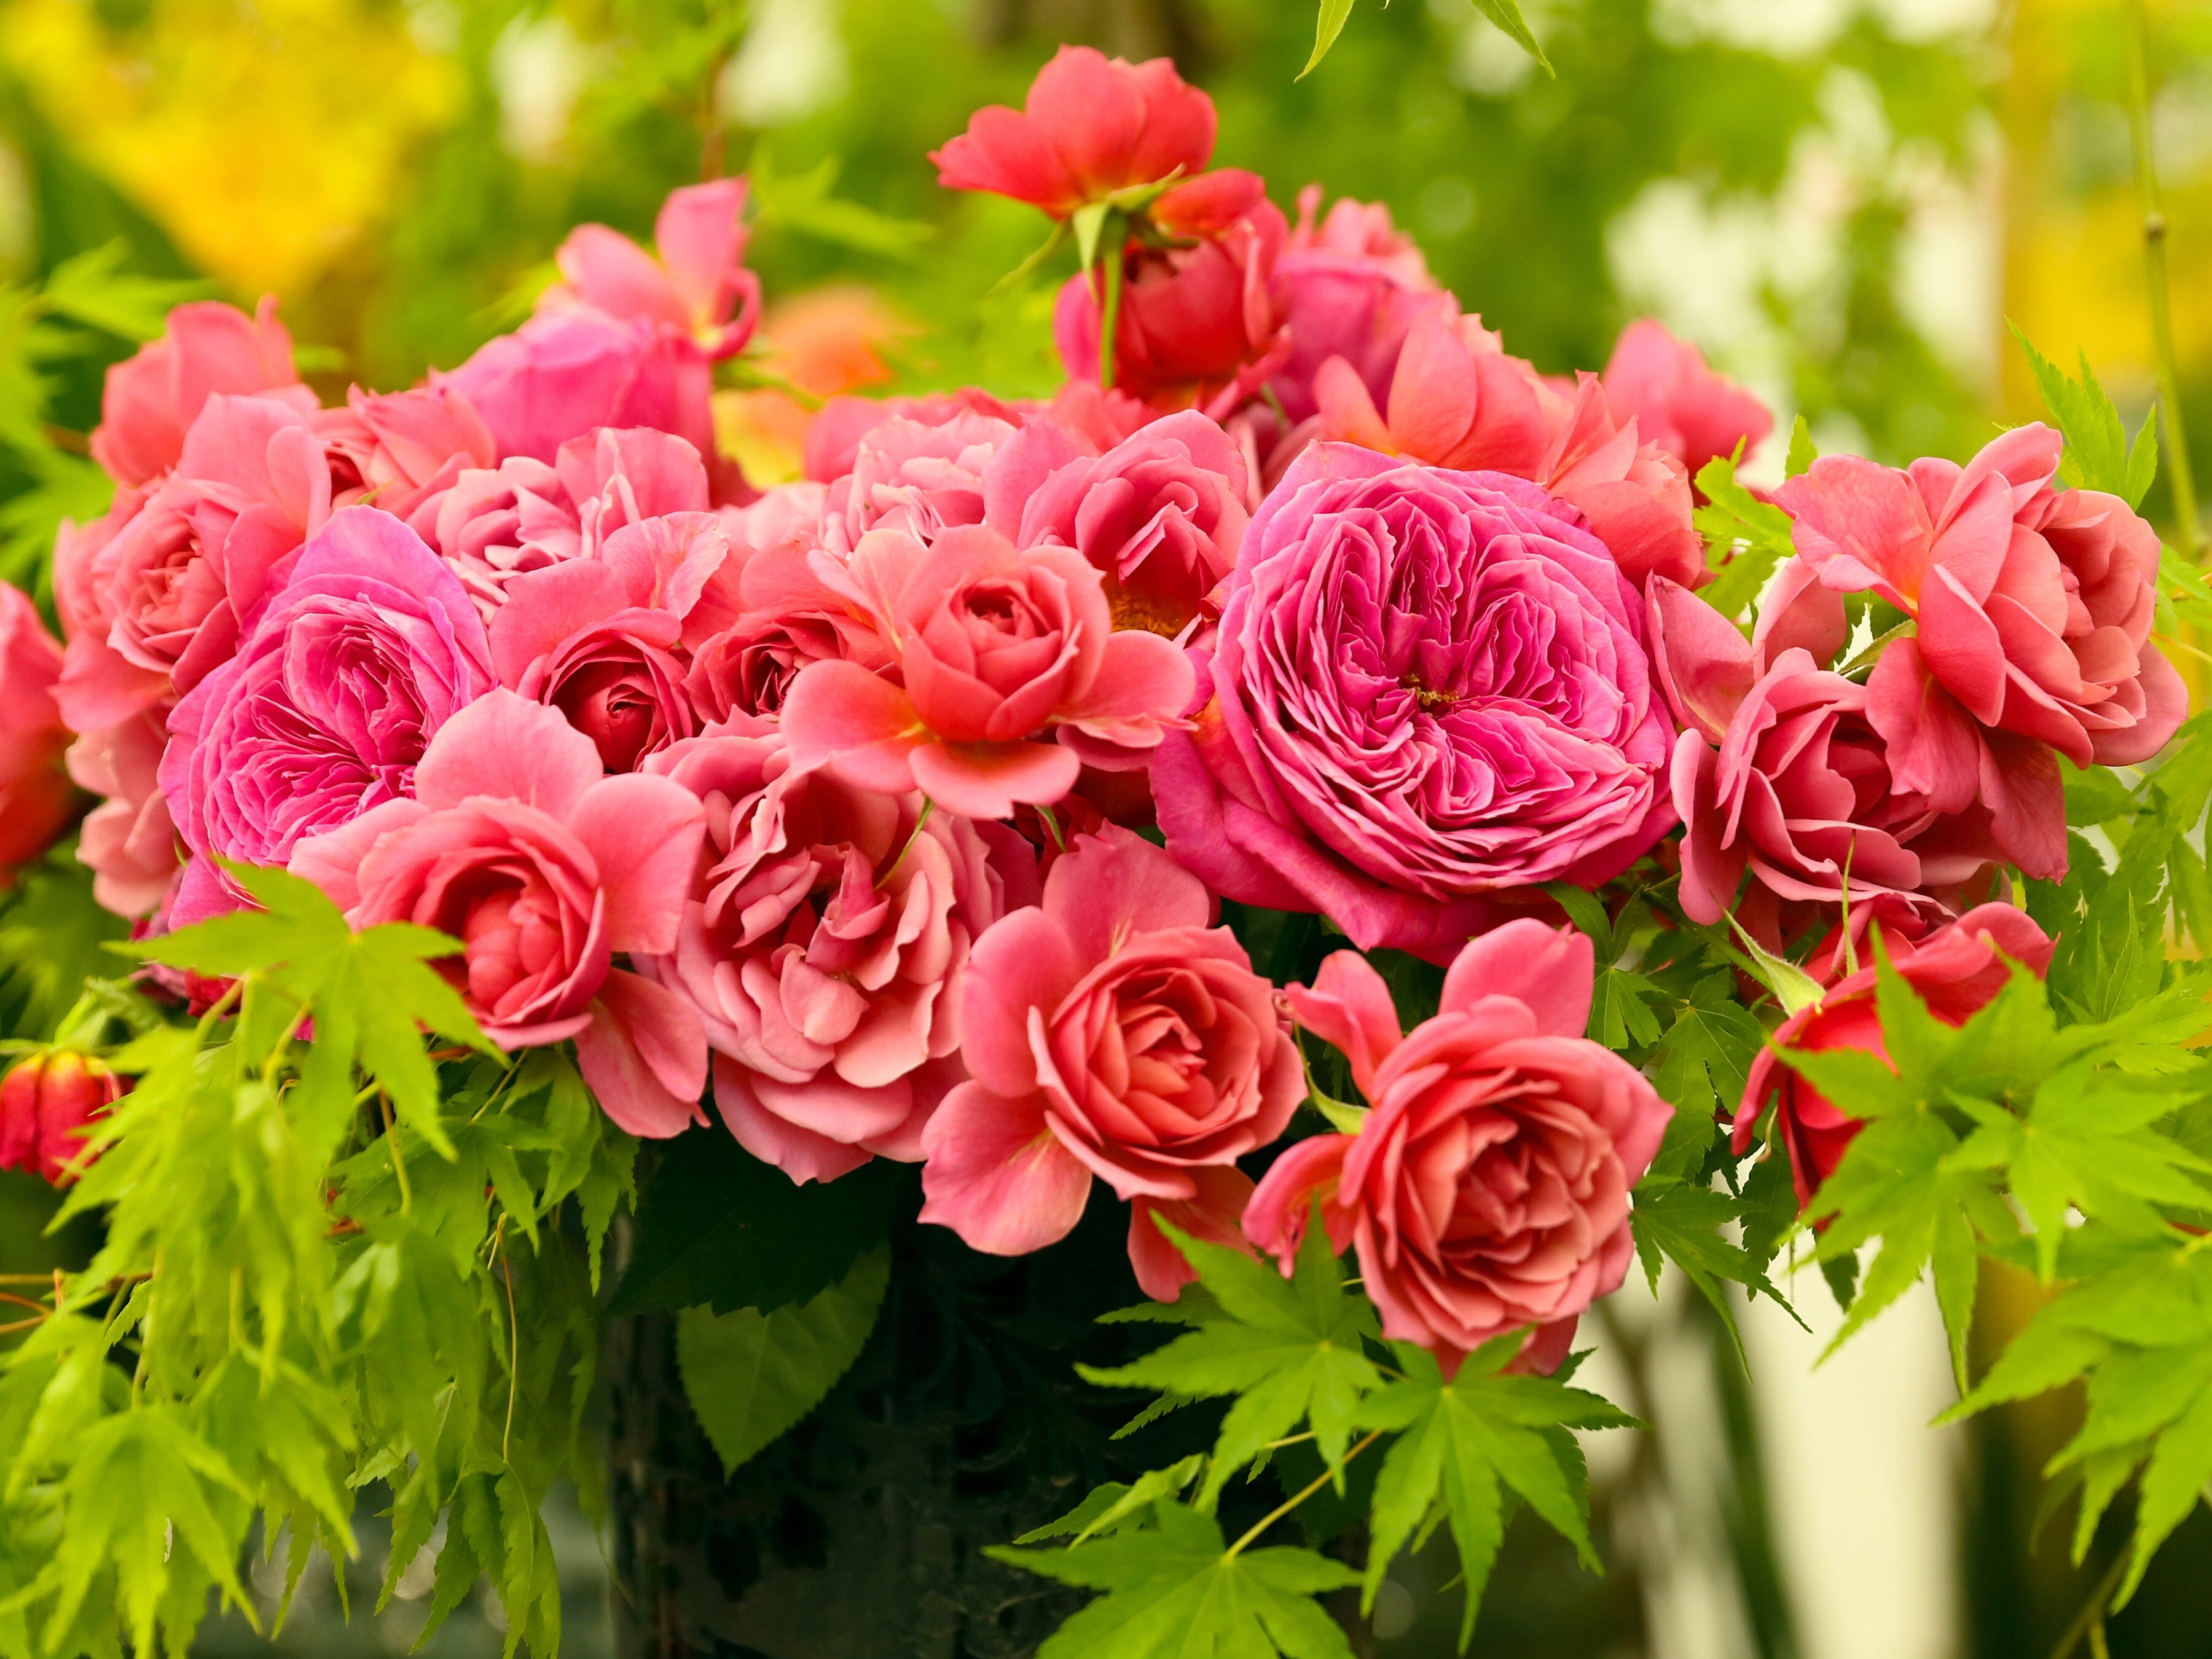 Скачать обои бесплатно Розовый, Цветы, Бутоны, Букет, Розы картинка на рабочий стол ПК